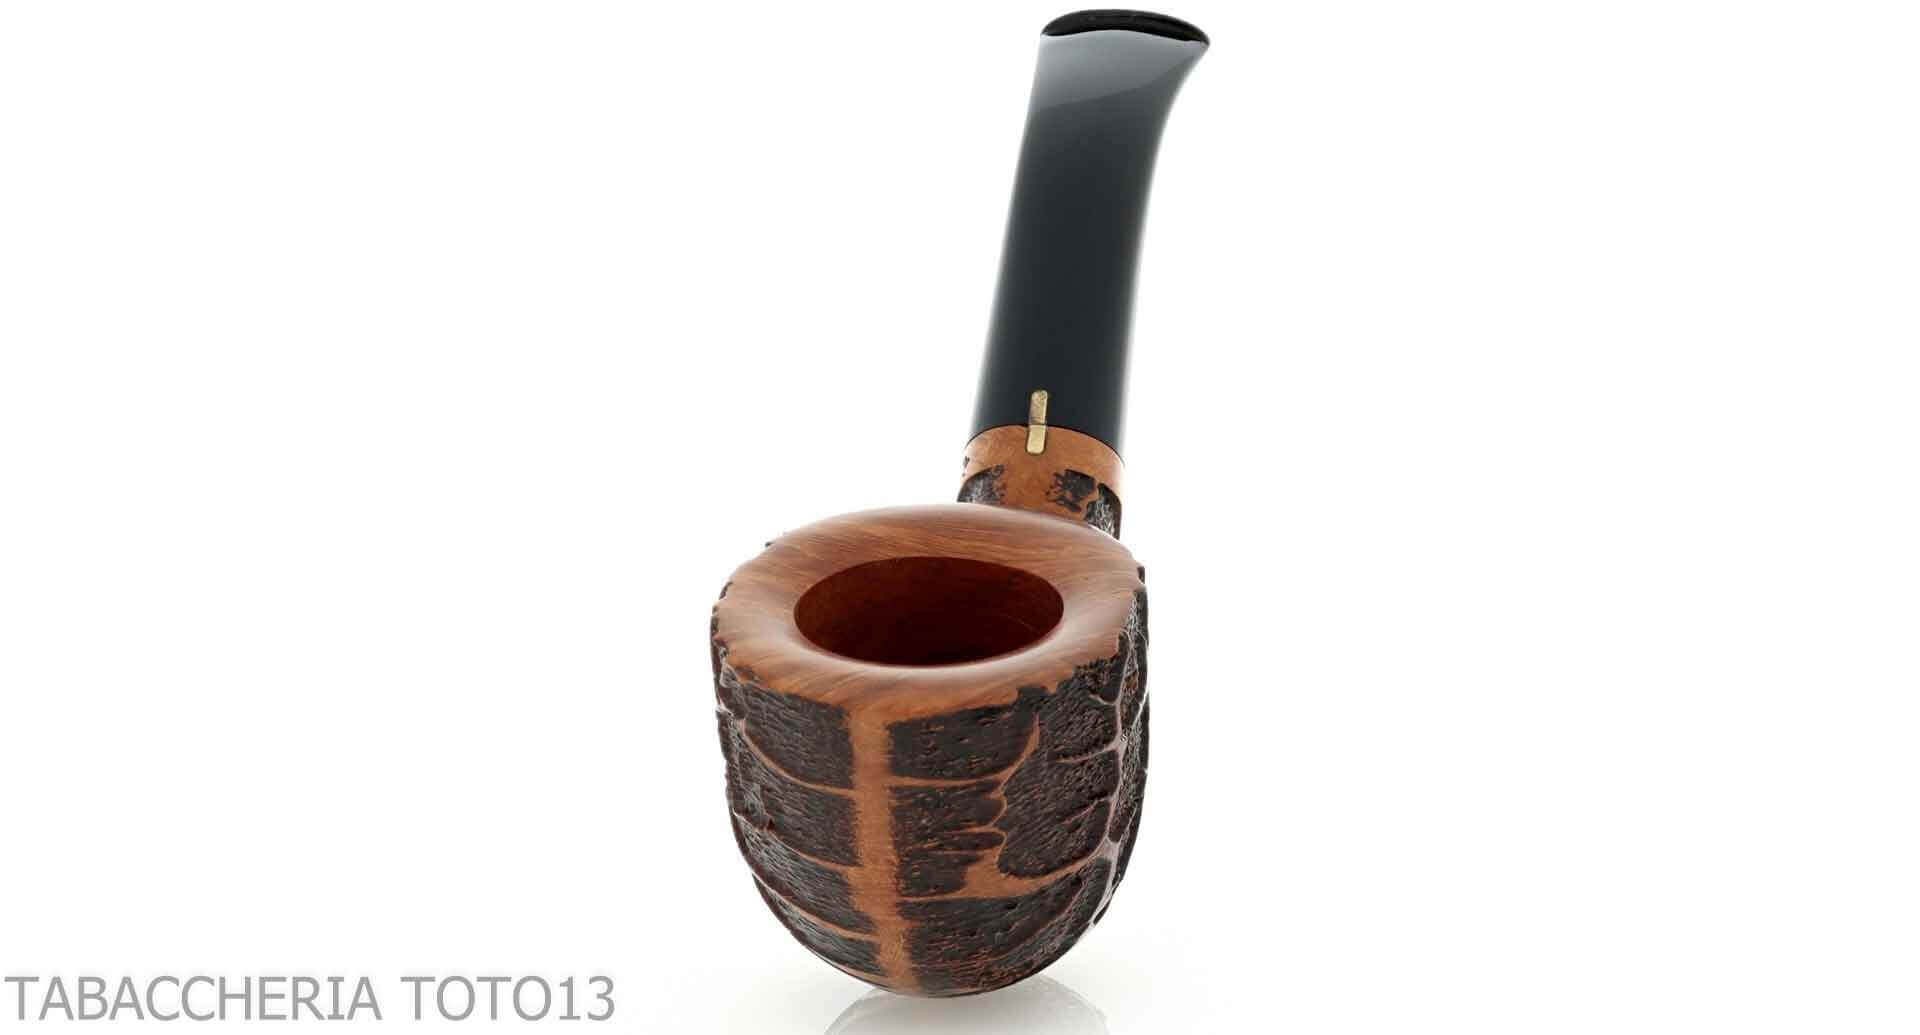 Cigar Pipe™ Pipa Stogie Cherry Originale. Biologico. Naturale. Pipe per  tabacco -  Italia